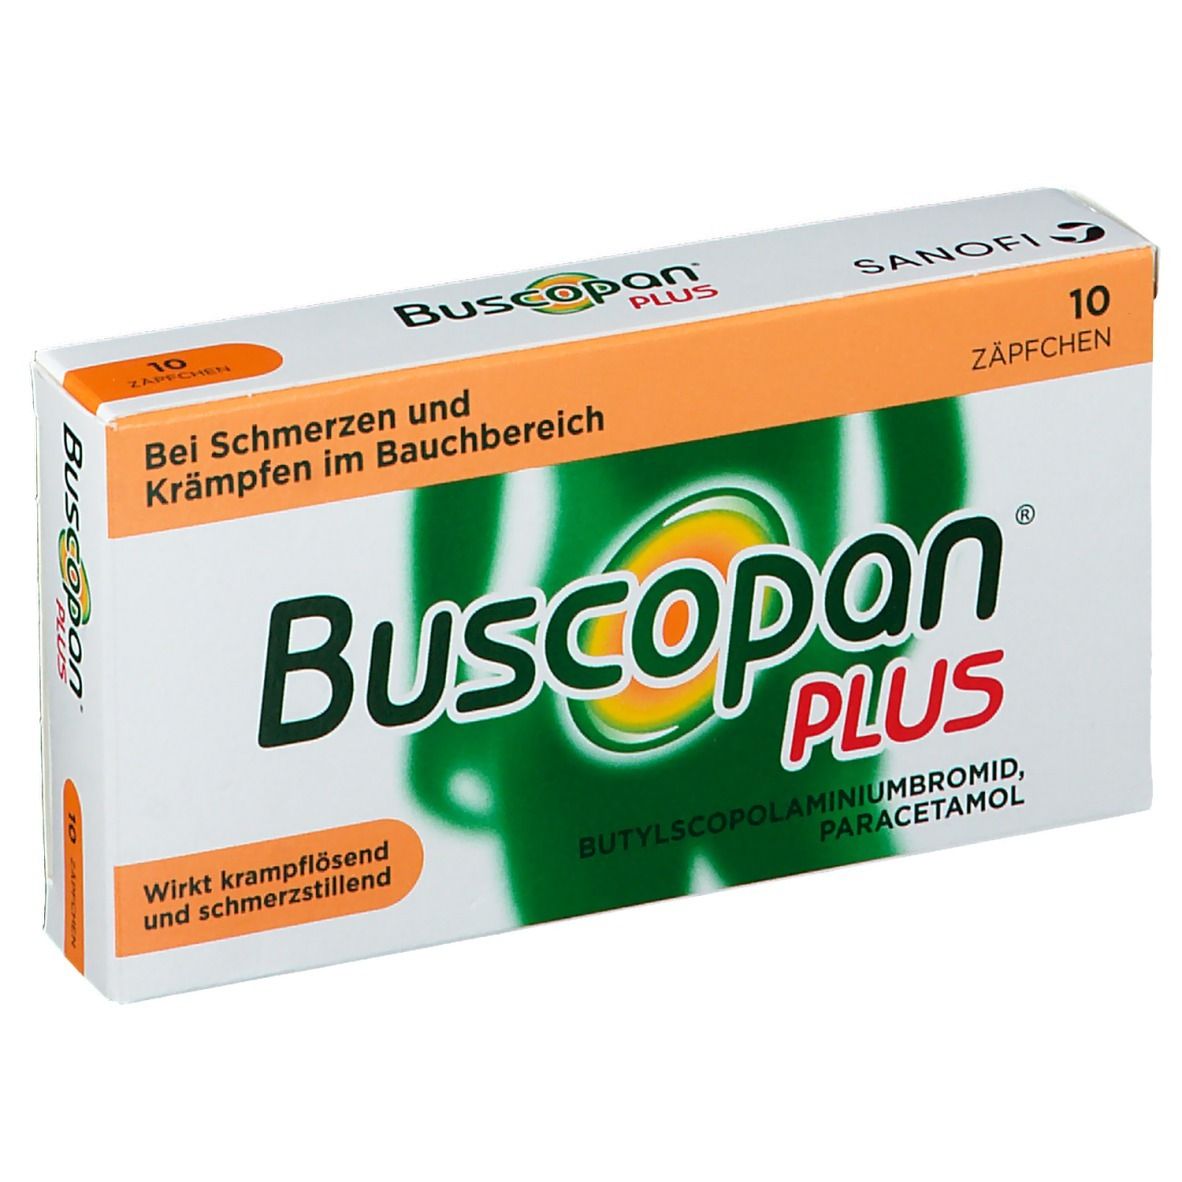 Buscopan Plus Zäpfchen bei Bauchschmerzen und Regelschmerzen